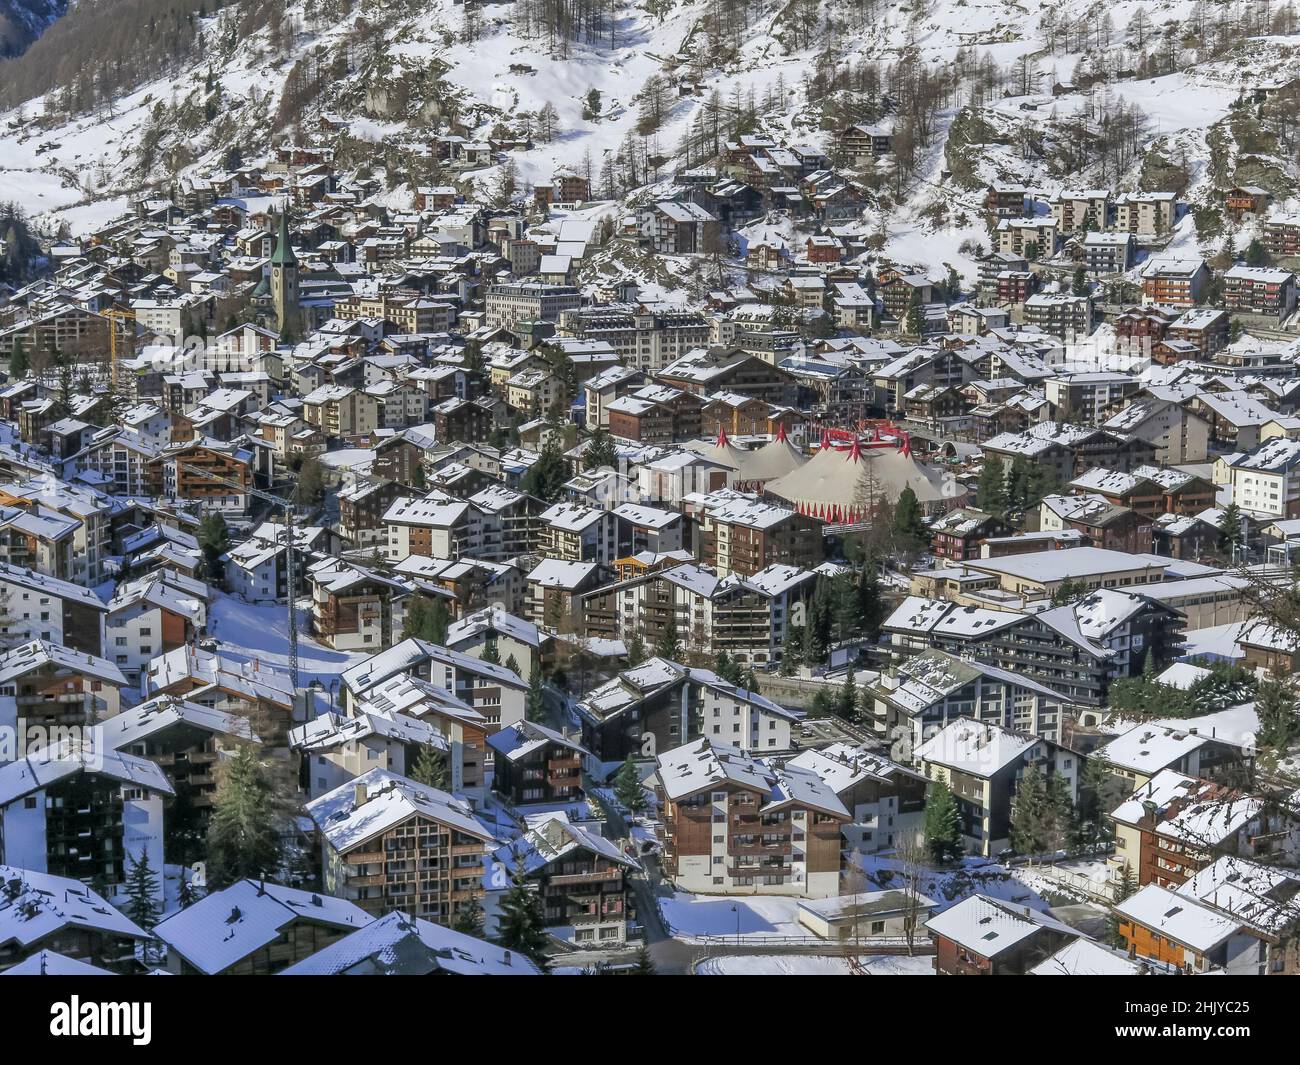 Stadtzentrum, Zermatt, Wallis, Schweiz Foto de stock